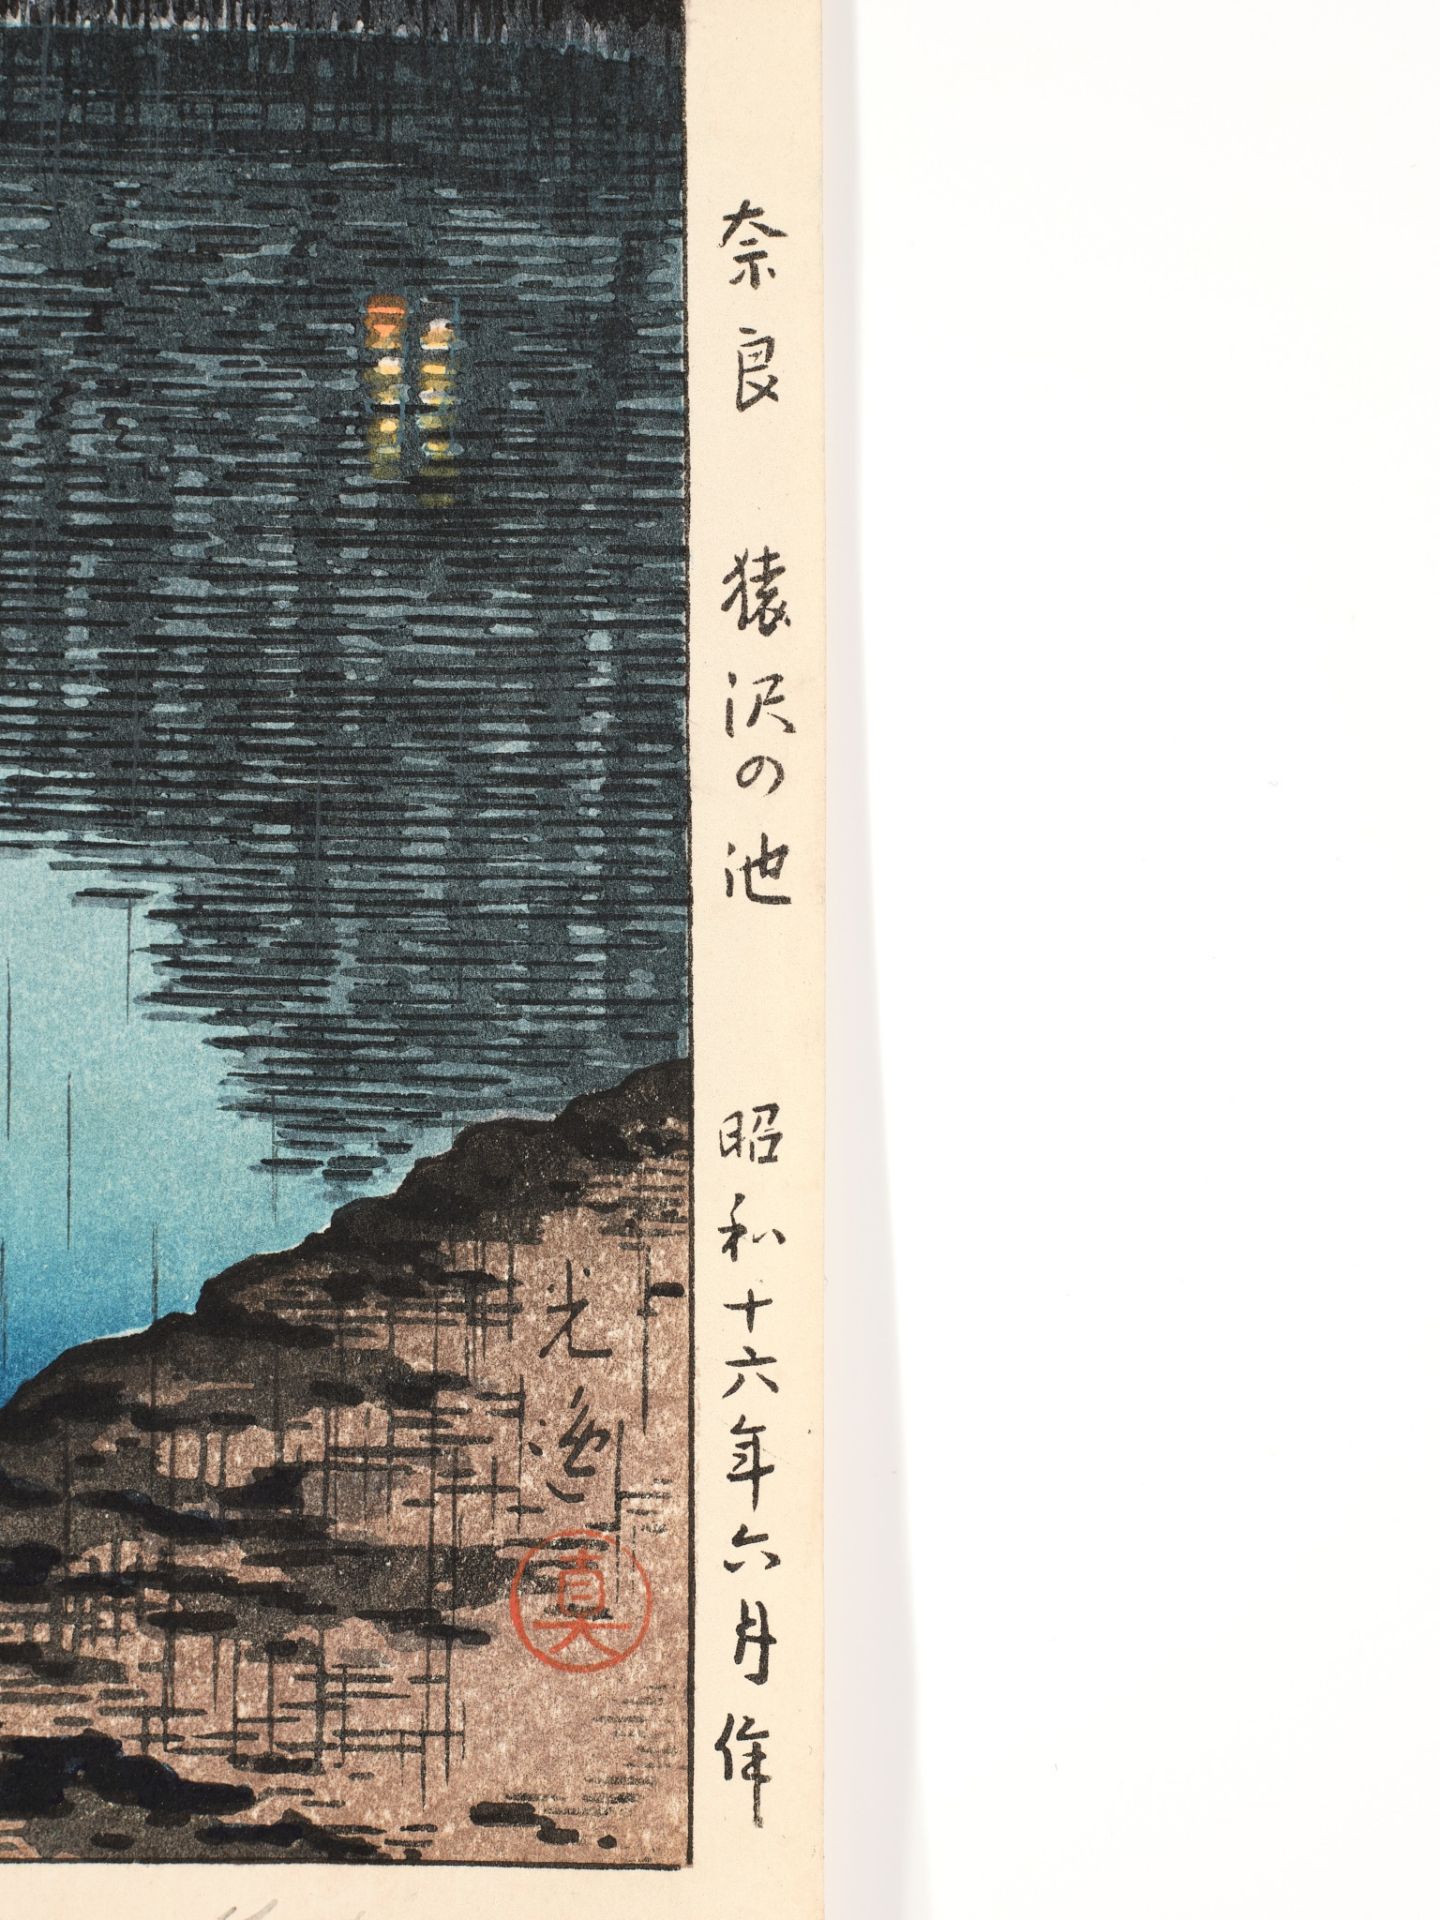 TSUCHIYA KOITSU (1870-1949), THE POND OF SARUSAWA, NARA ON A RAINY EVENING - Image 4 of 7